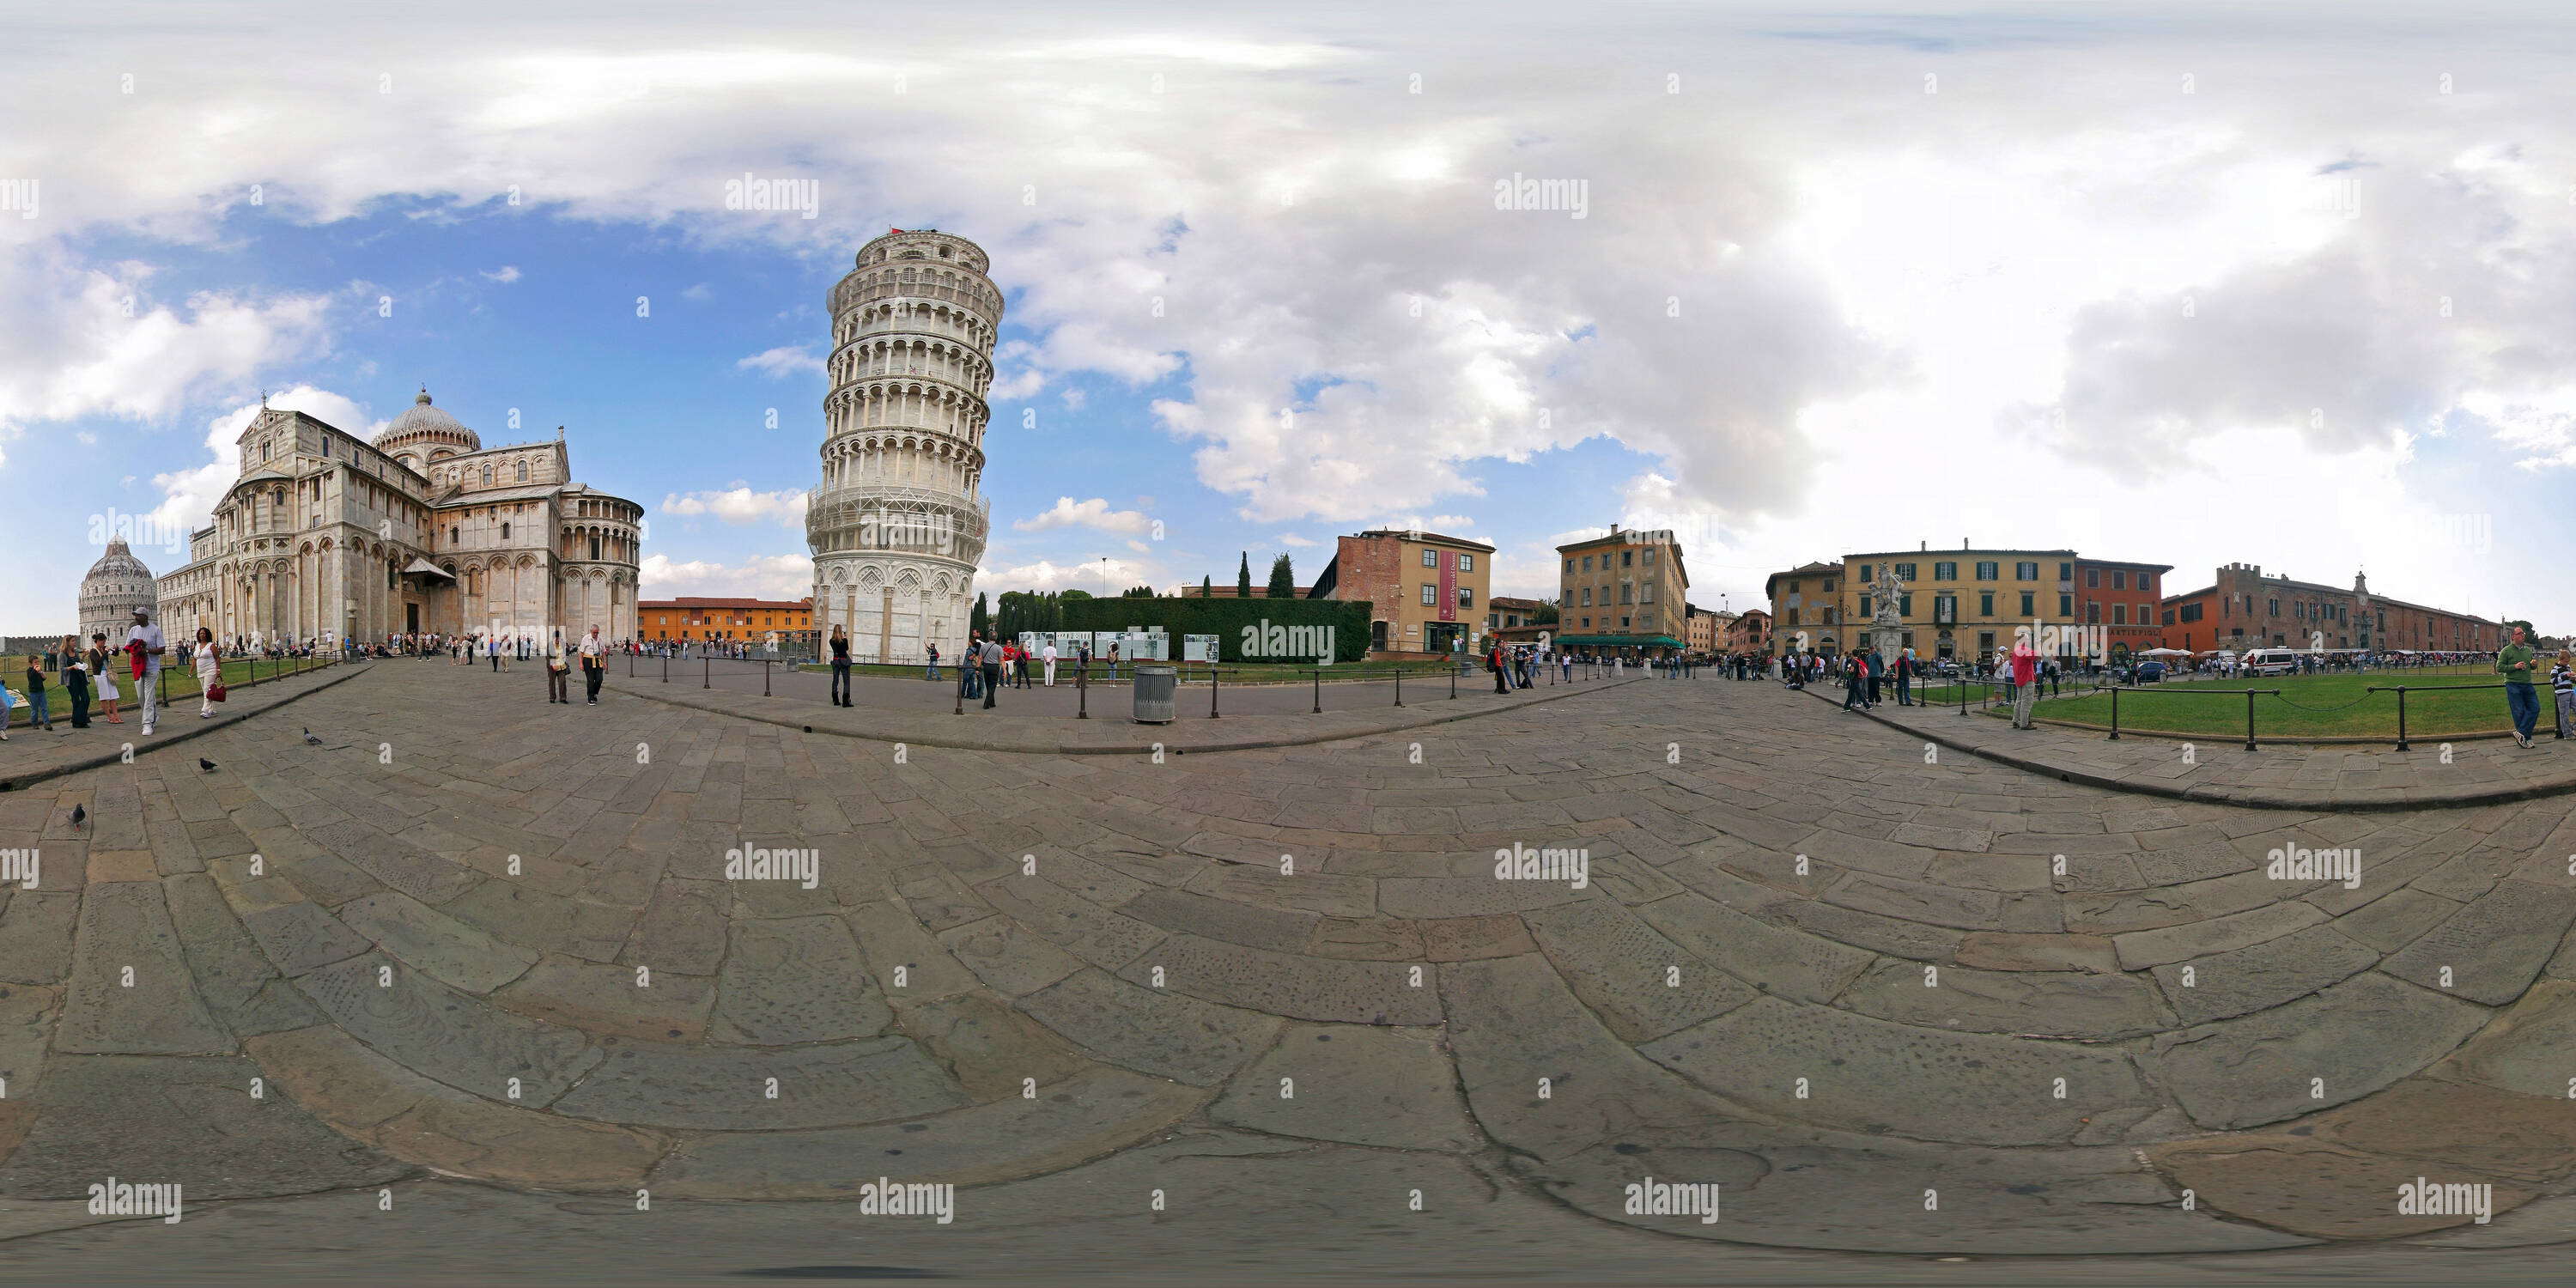 Visualizzazione panoramica a 360 gradi di Piza